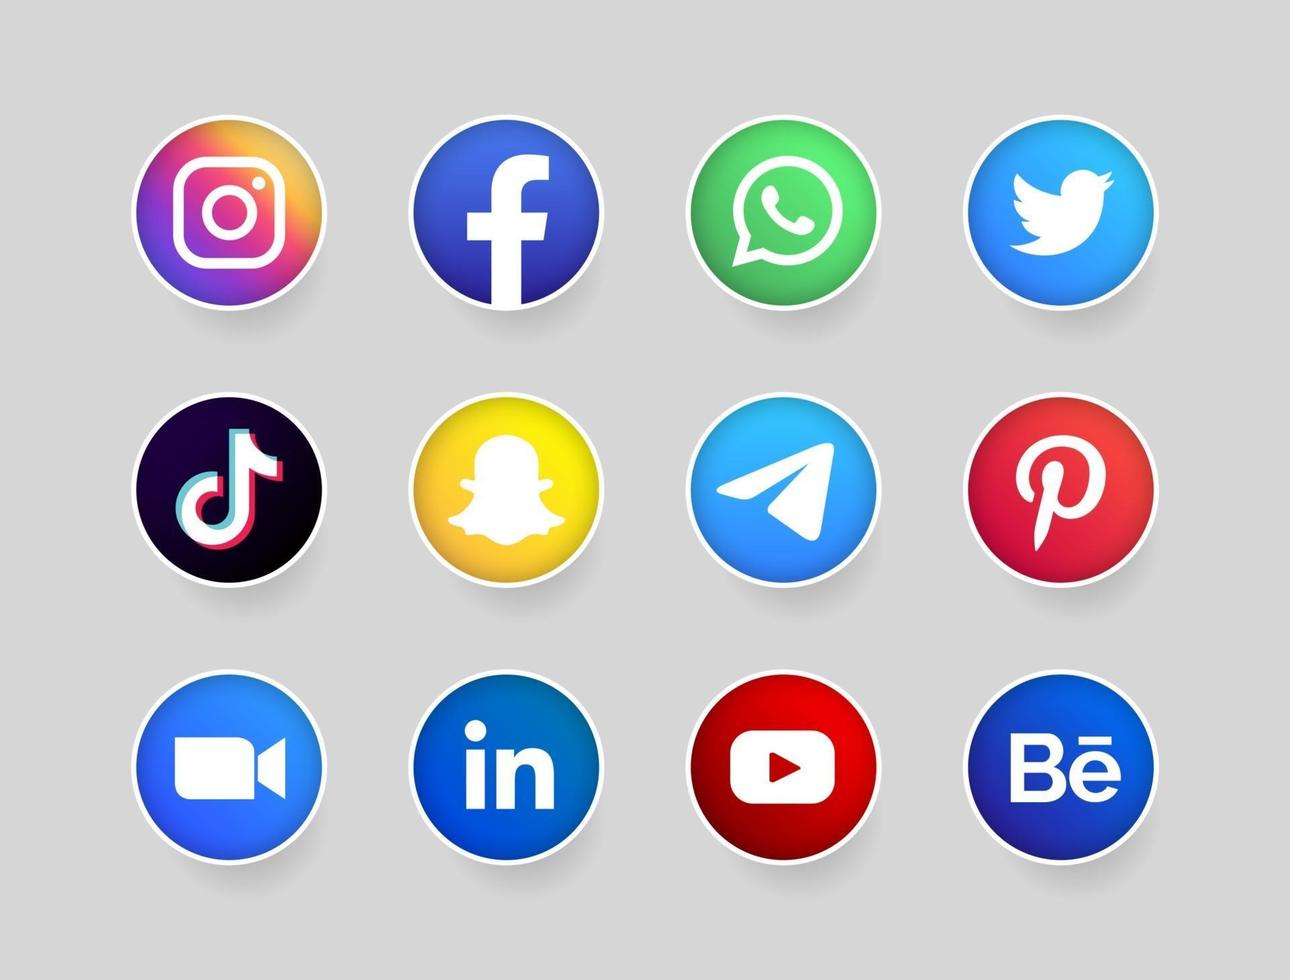 collection de logos de médias sociaux vecteur